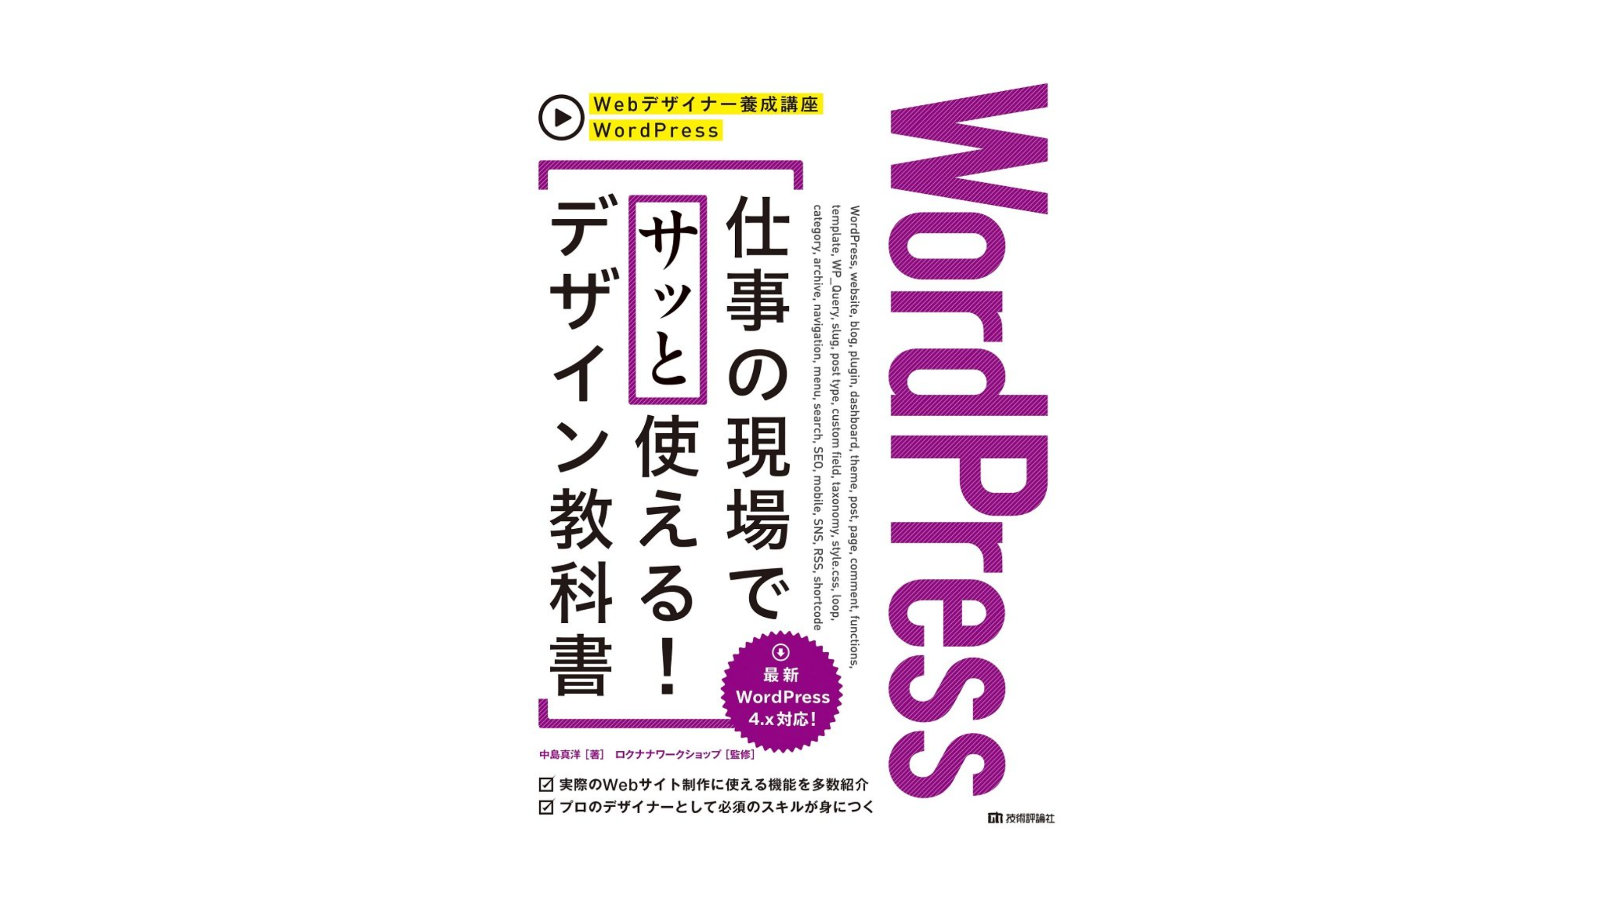 WordPress 仕事の現場でサッと使える！ デザイン教科書」。私のWordpress学習は基本これ1冊。【実践形式】